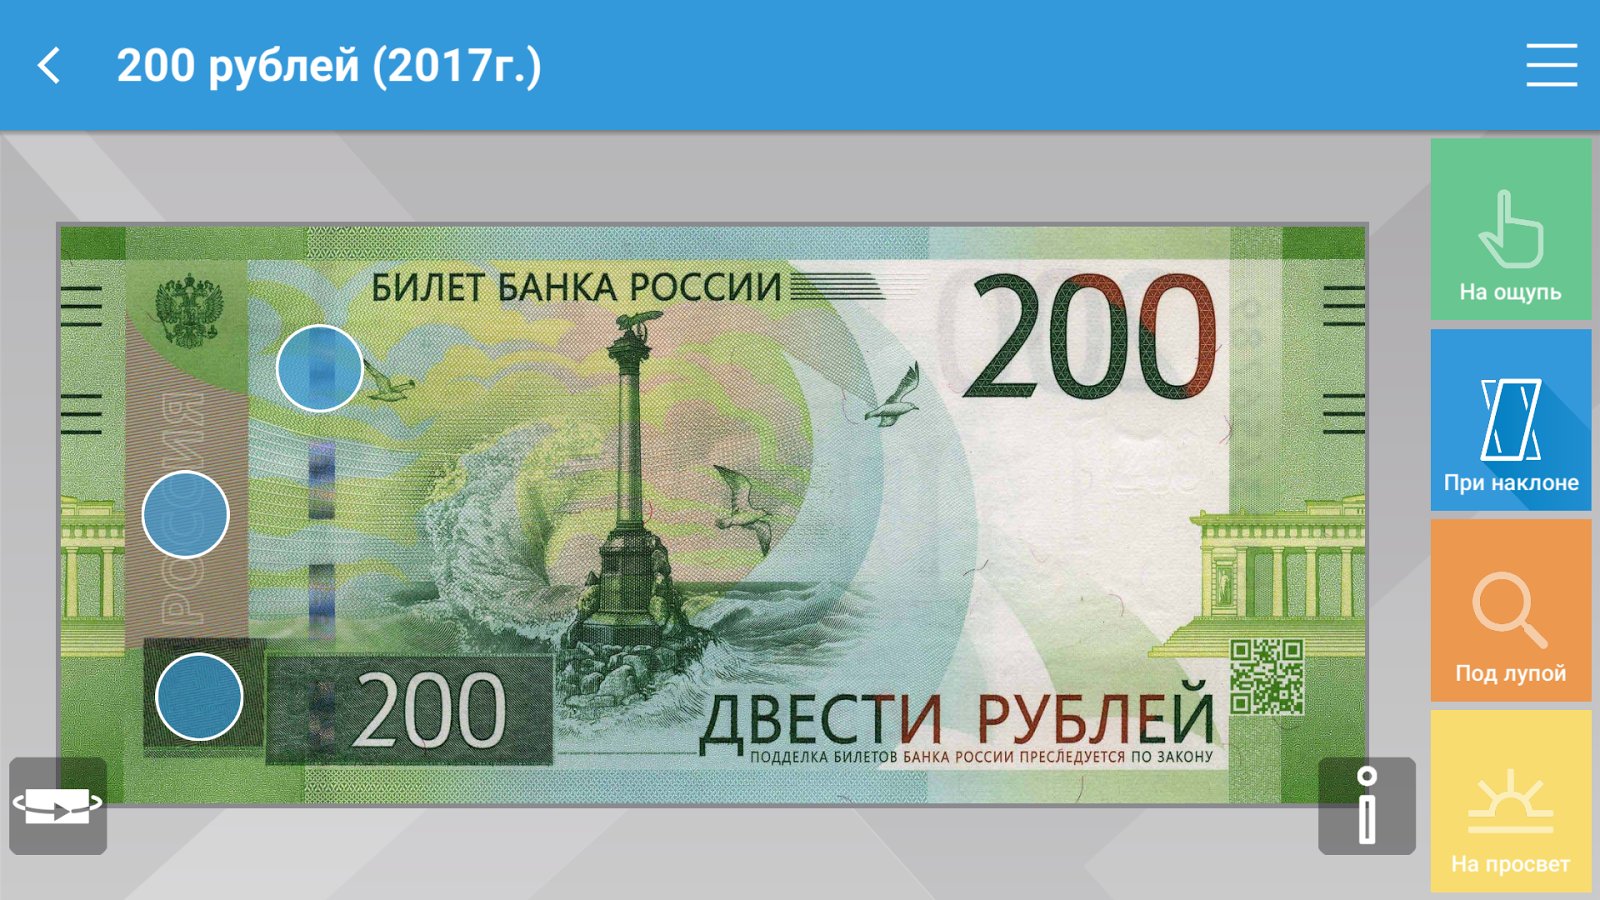 200 рублей 2017. Купюра 200 рублей. 200 Рублей купюра 2017. Двести рублей 2017. 200 Рублей банкнота.